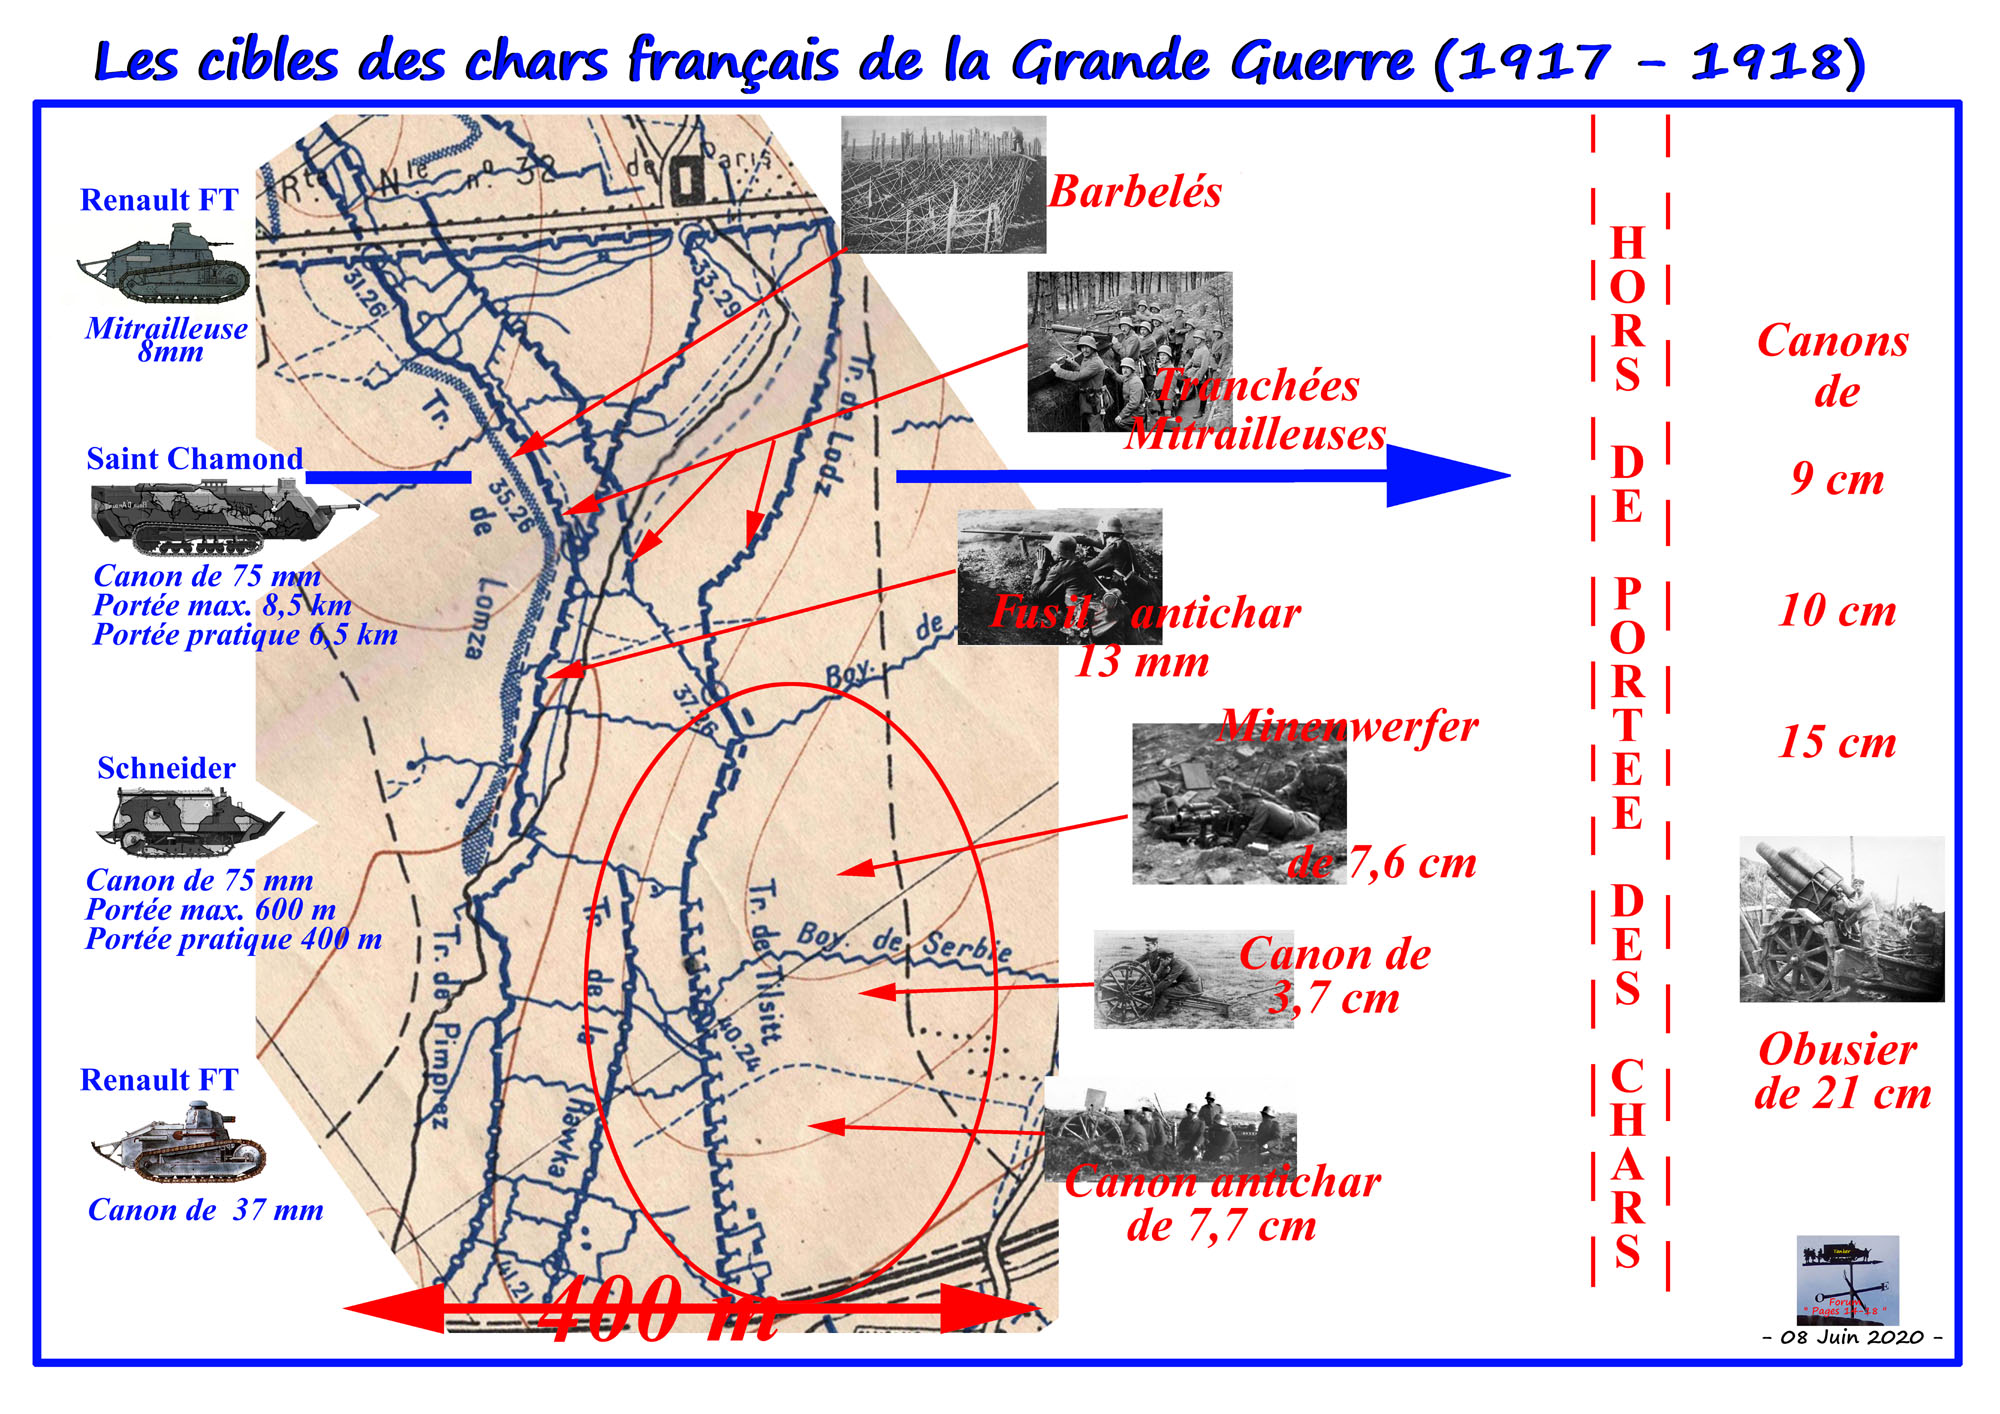 Genése des chars - Les cibles des chars français (01a).jpg